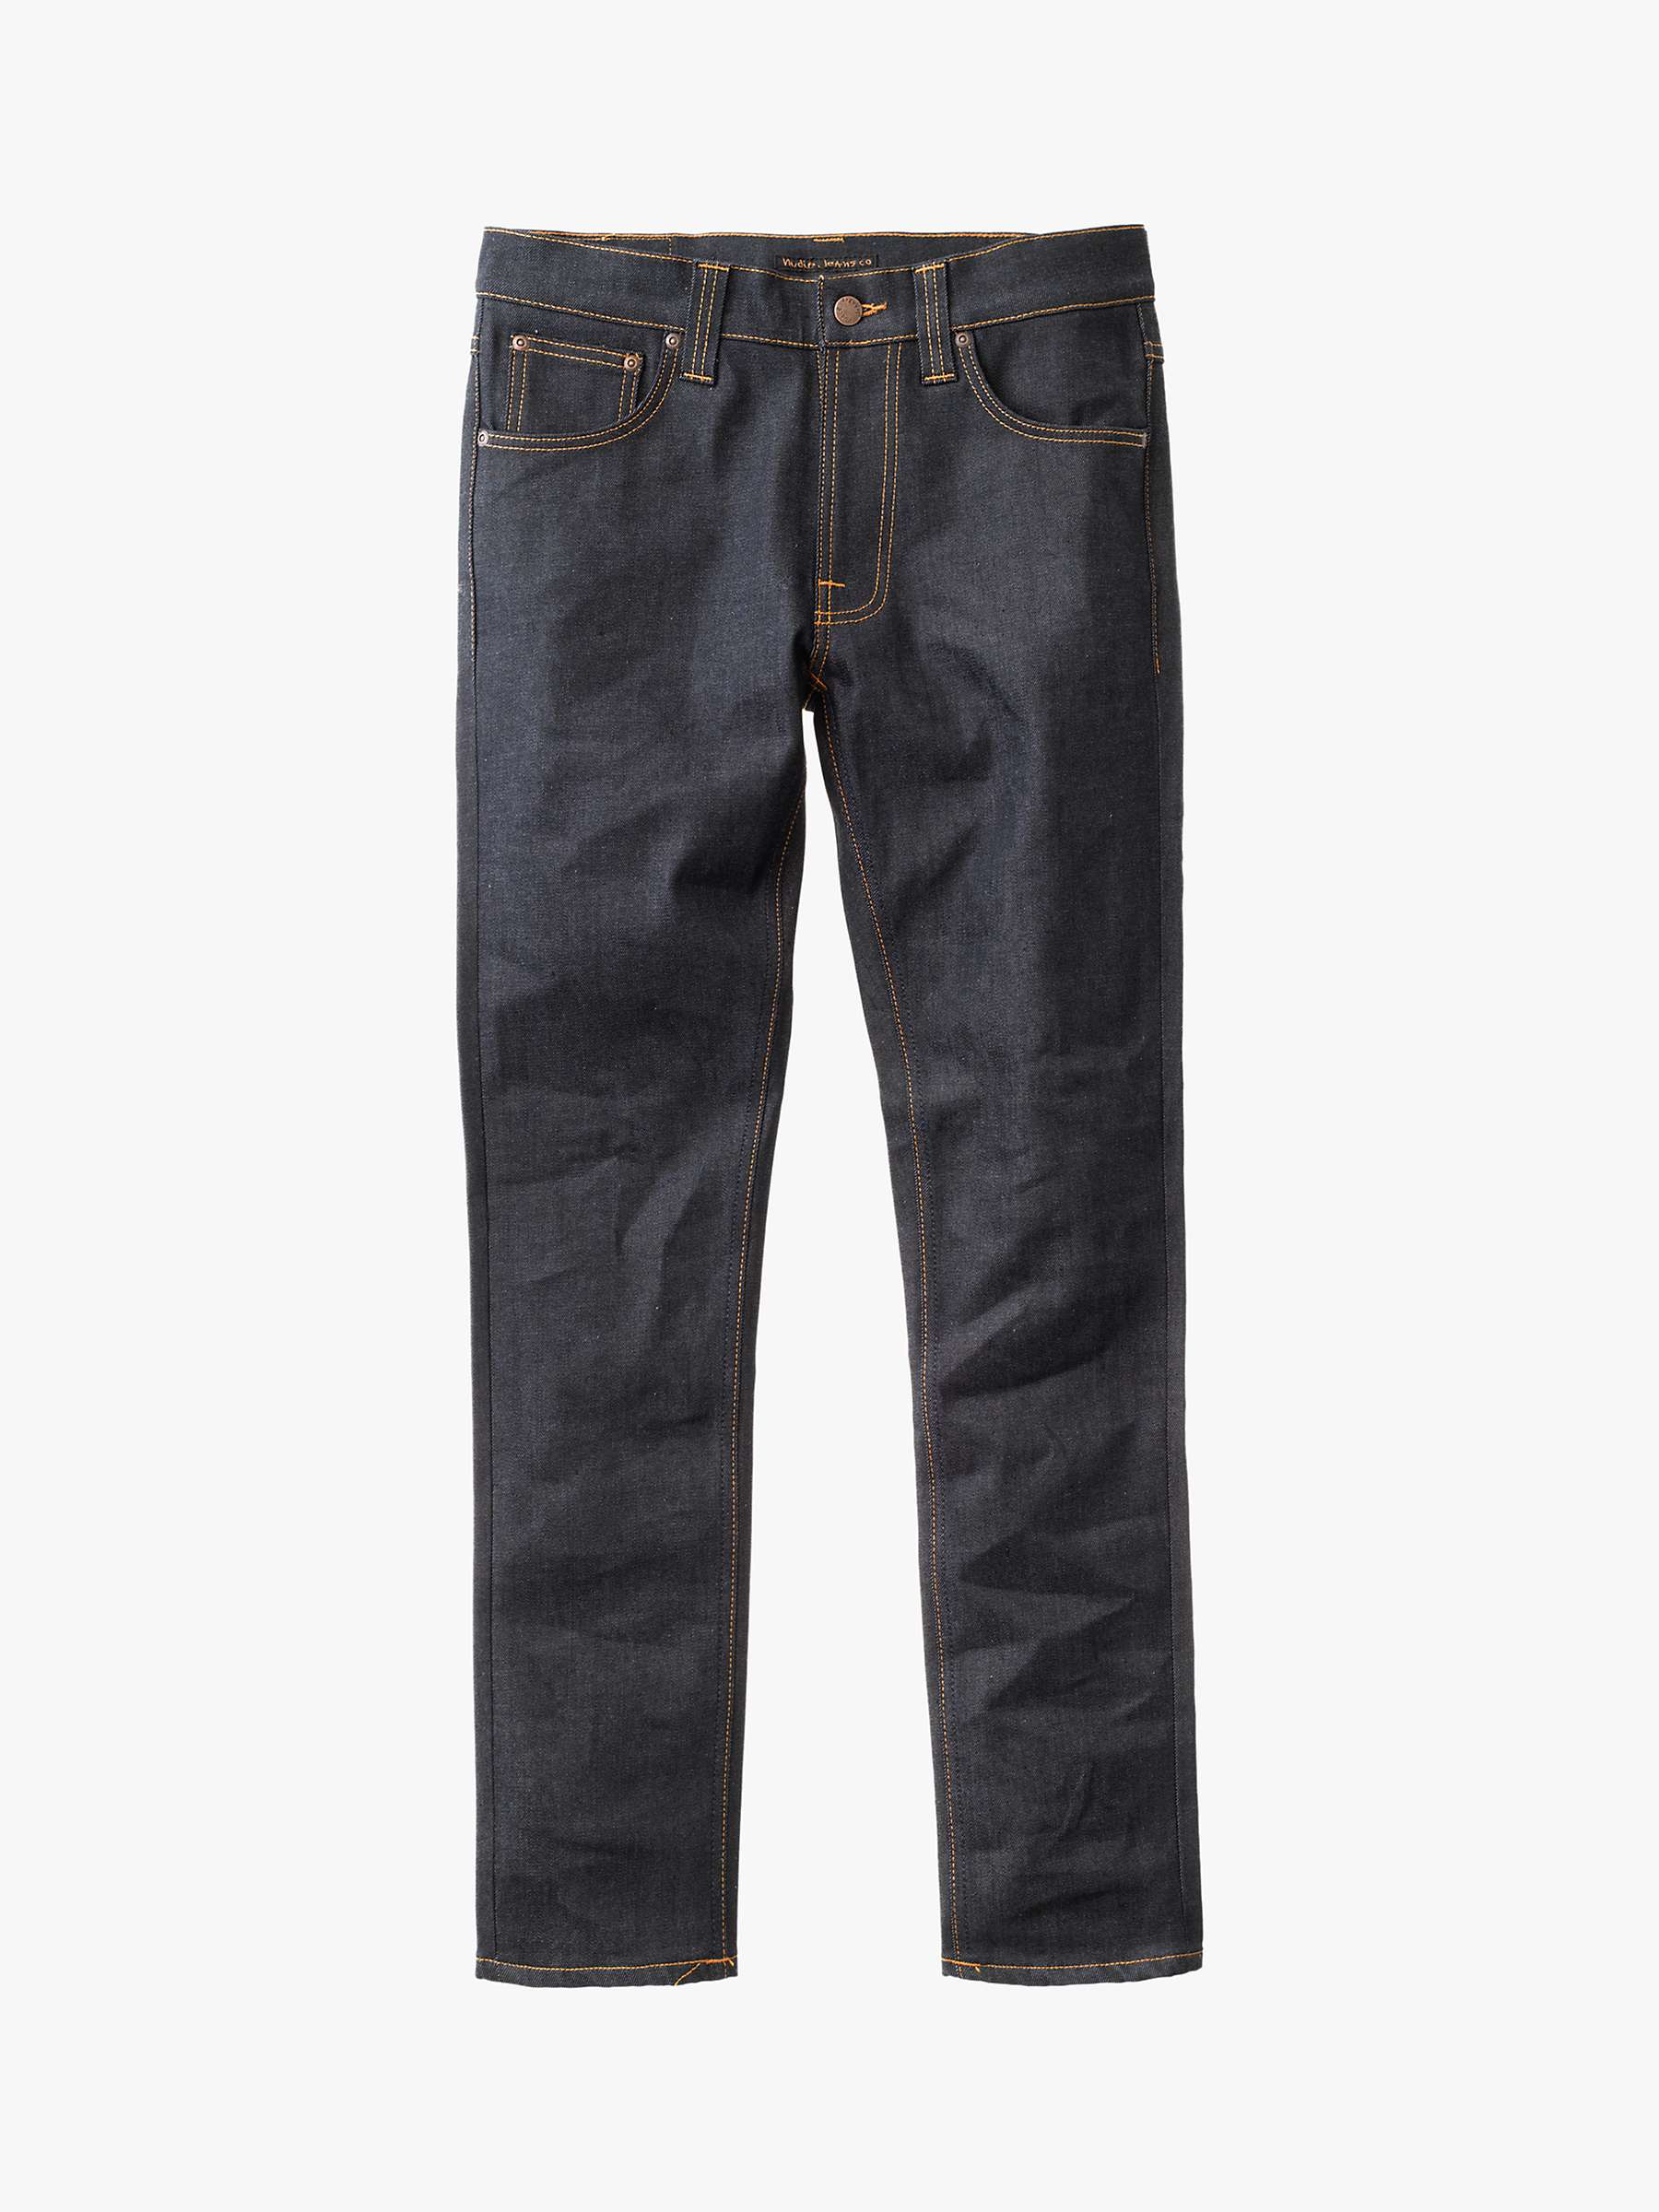 Buy Nudie Jeans Slim Lean Dean Jeans, Dry 16 Dips Online at johnlewis.com